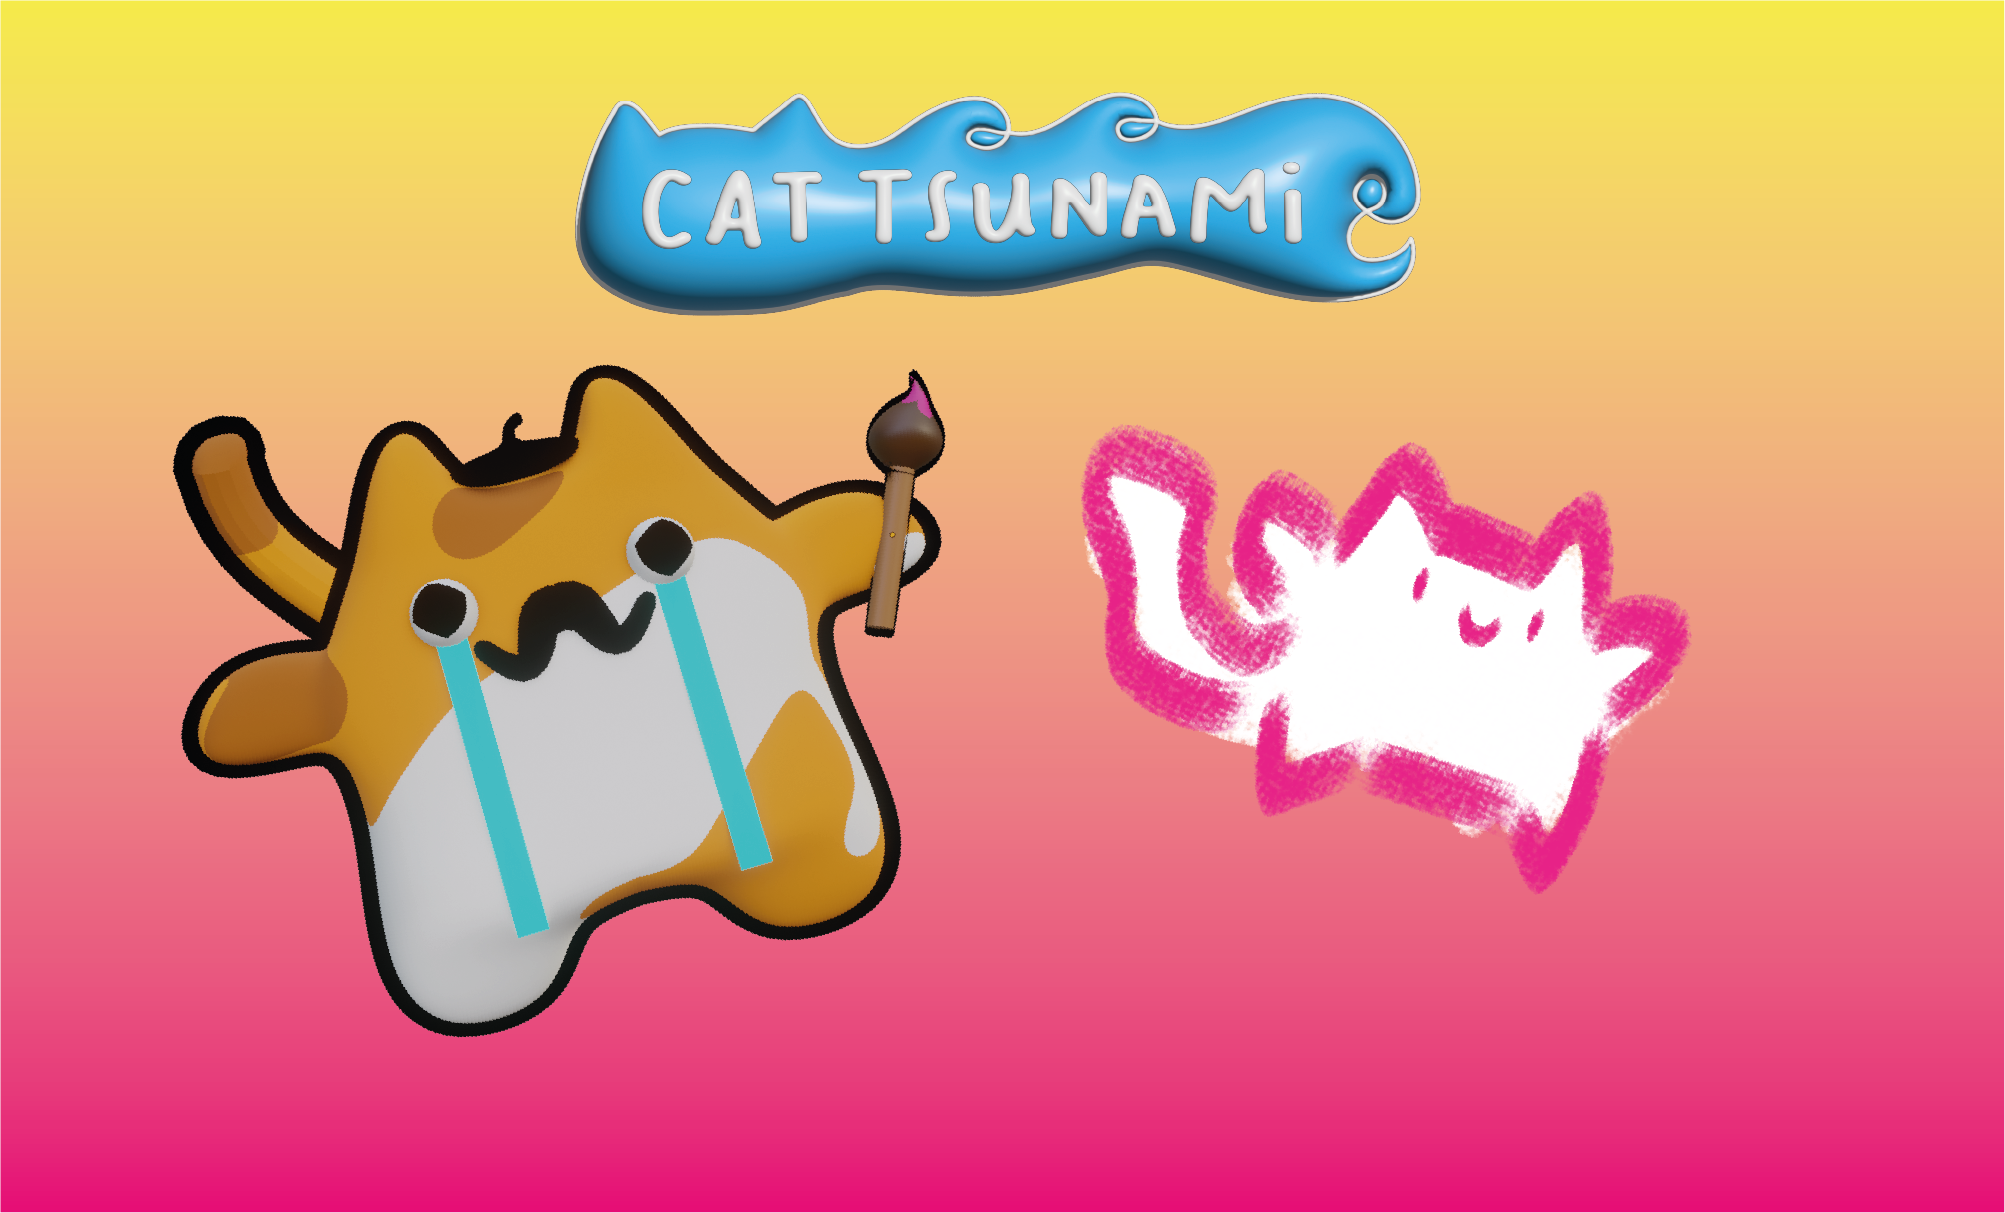 Cat-Tsunami